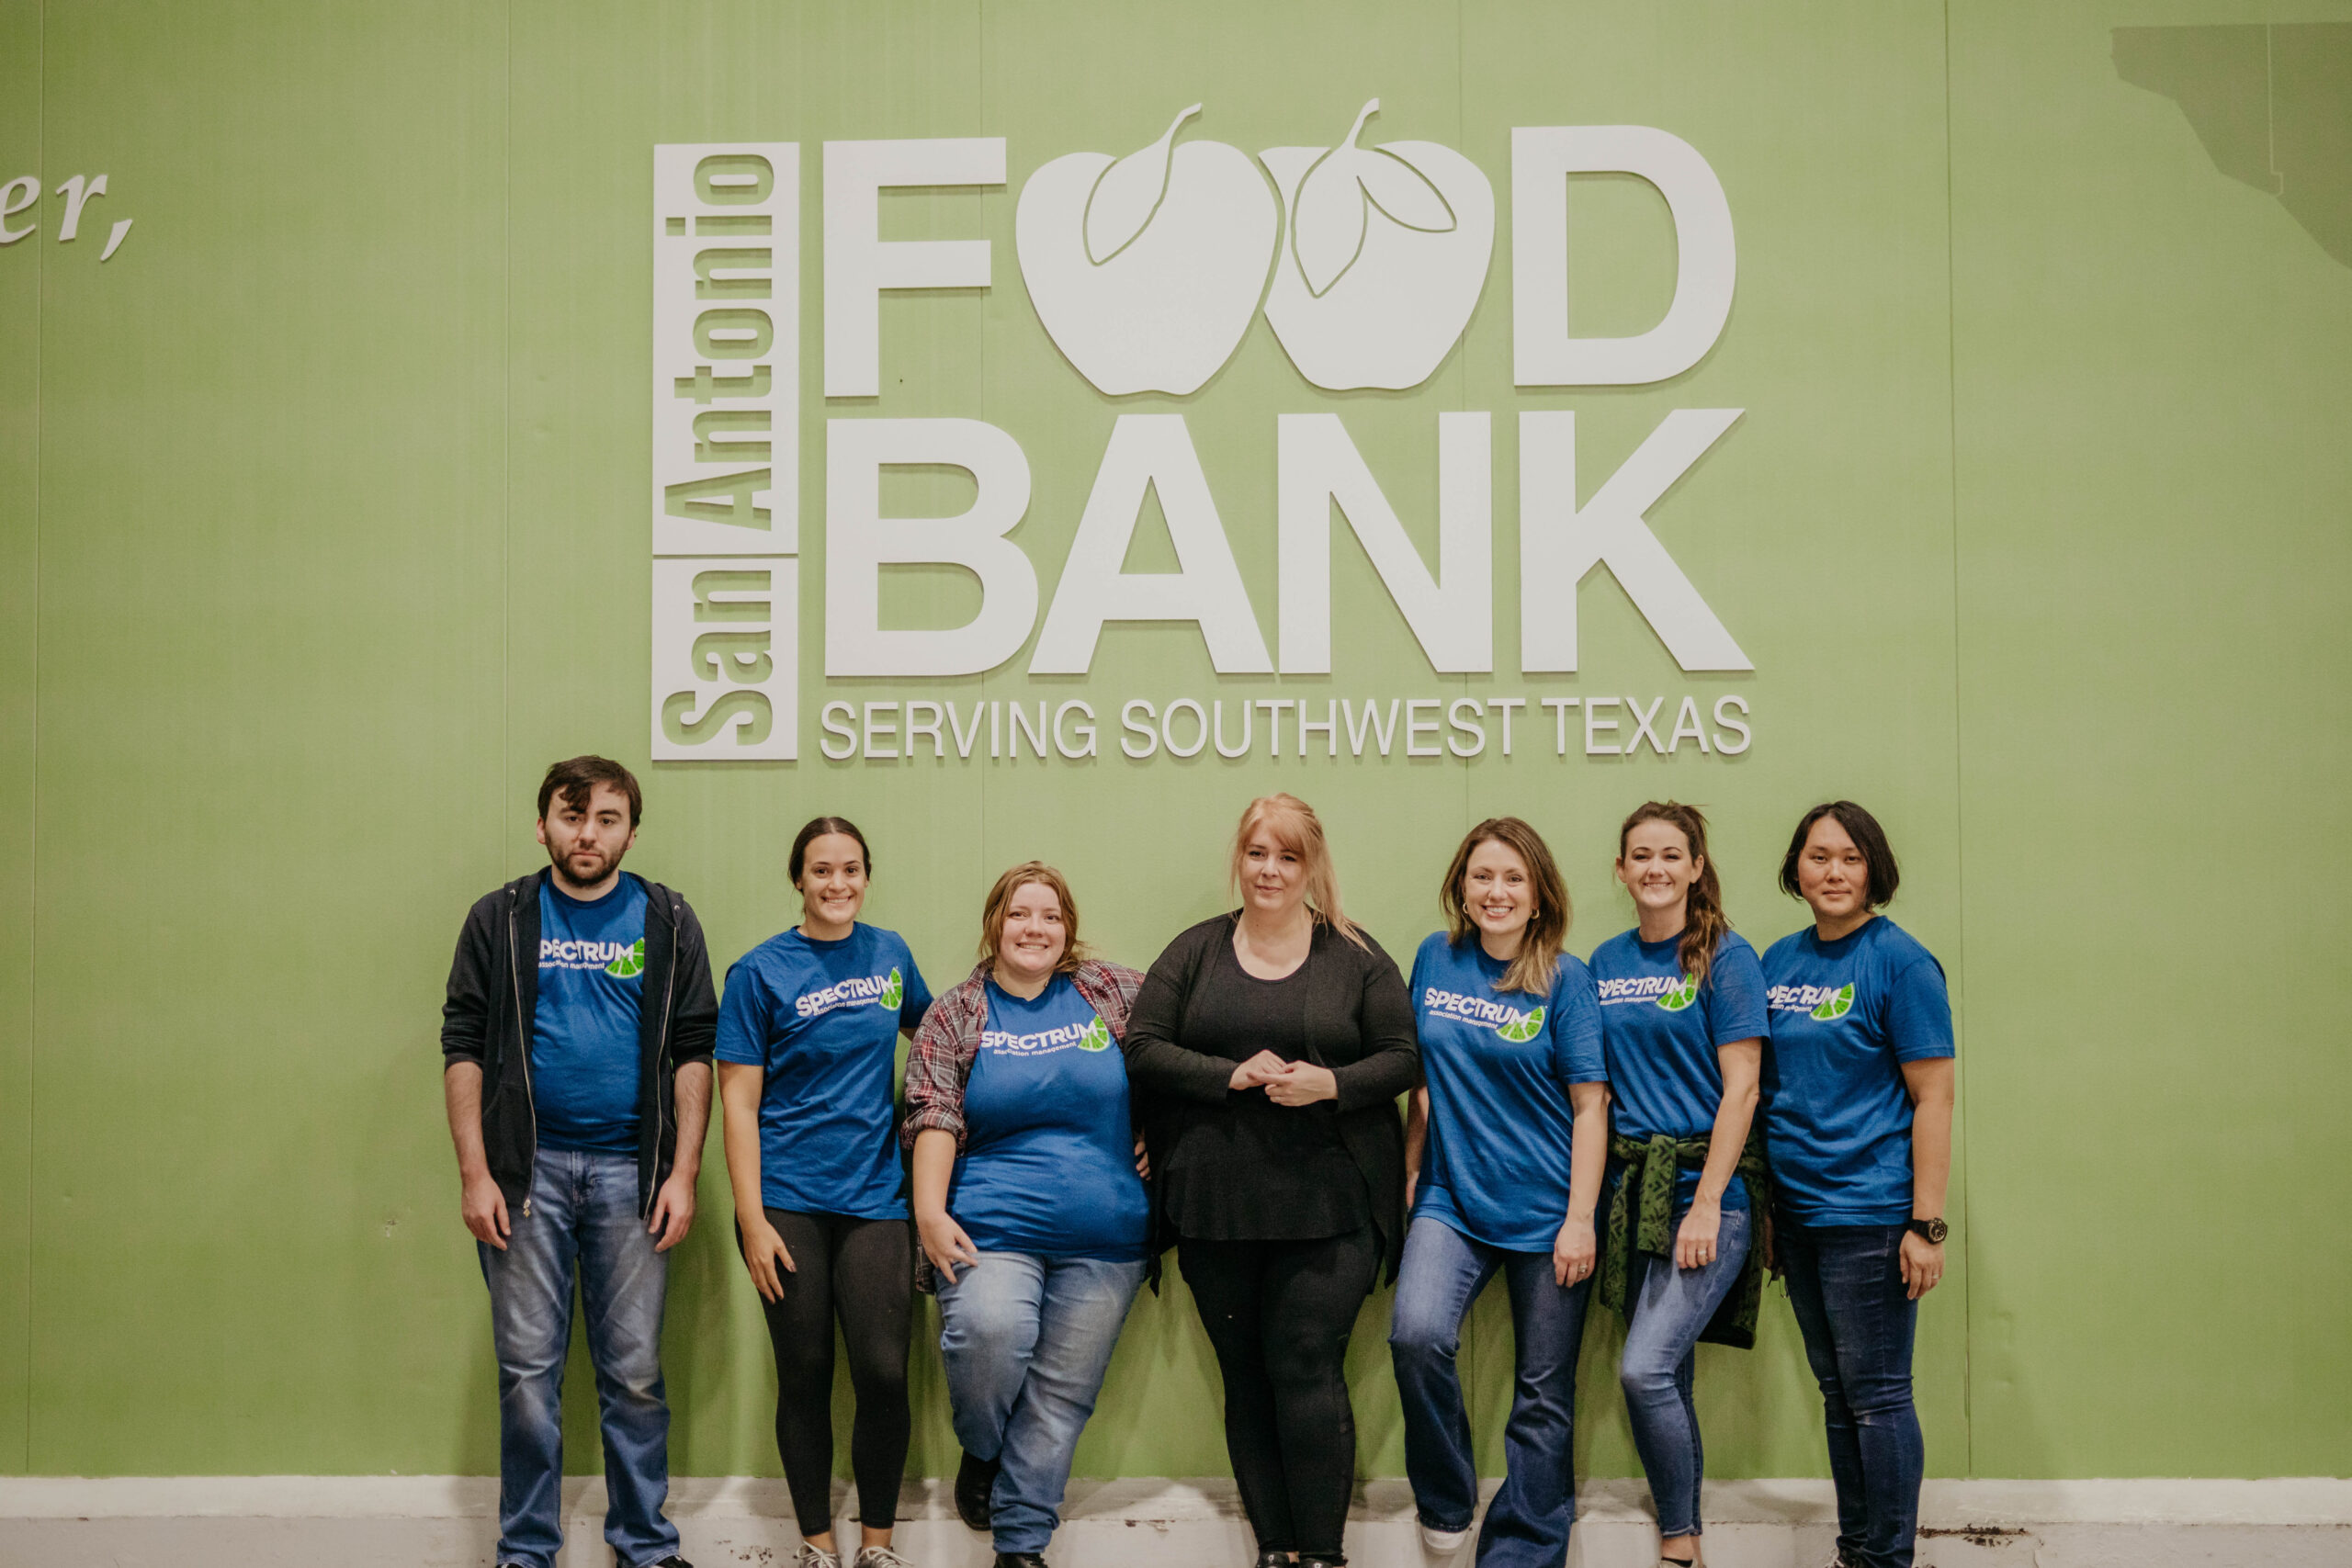 Volunteered in San Antonio Food Bank